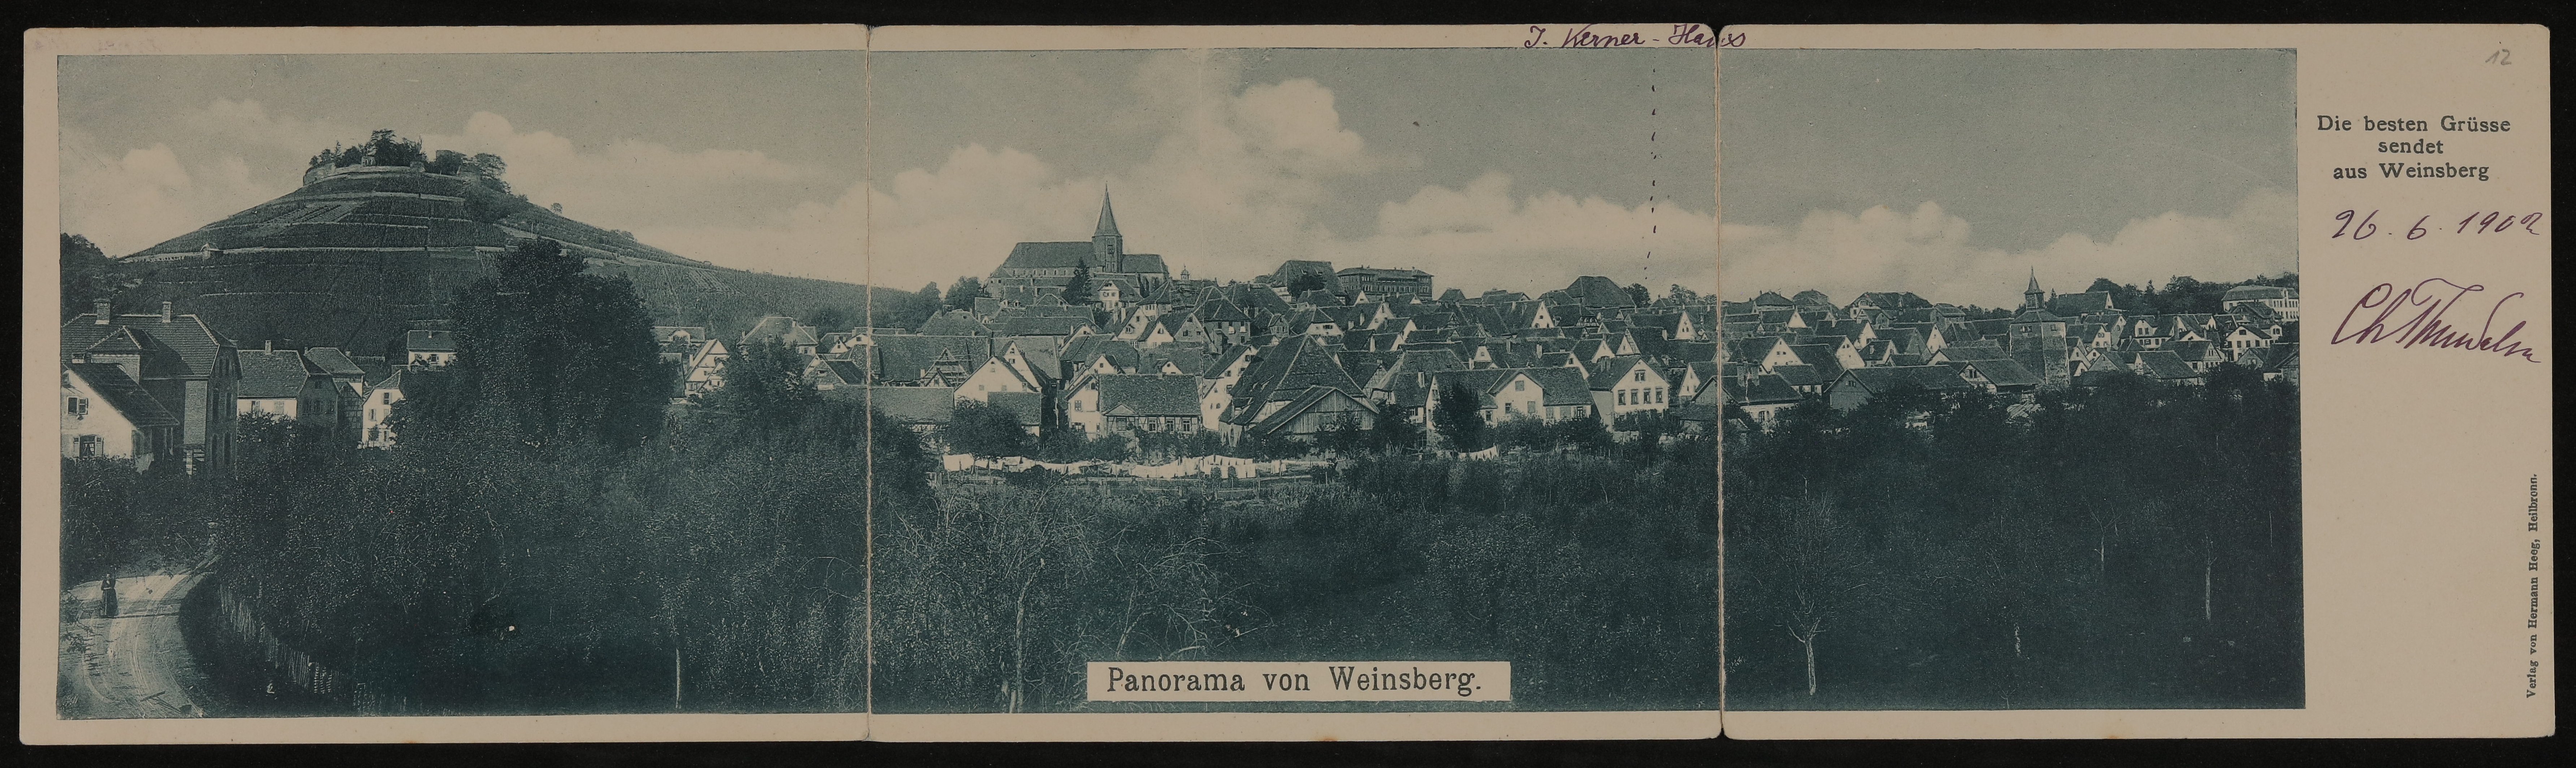 Aufklappbare Panoramakarte von Christiane Thun-Salm an Hofmannsthal mit Panorama von Weinsberg (Freies Deutsches Hochstift / Frankfurter Goethe-Museum CC BY-NC-SA)